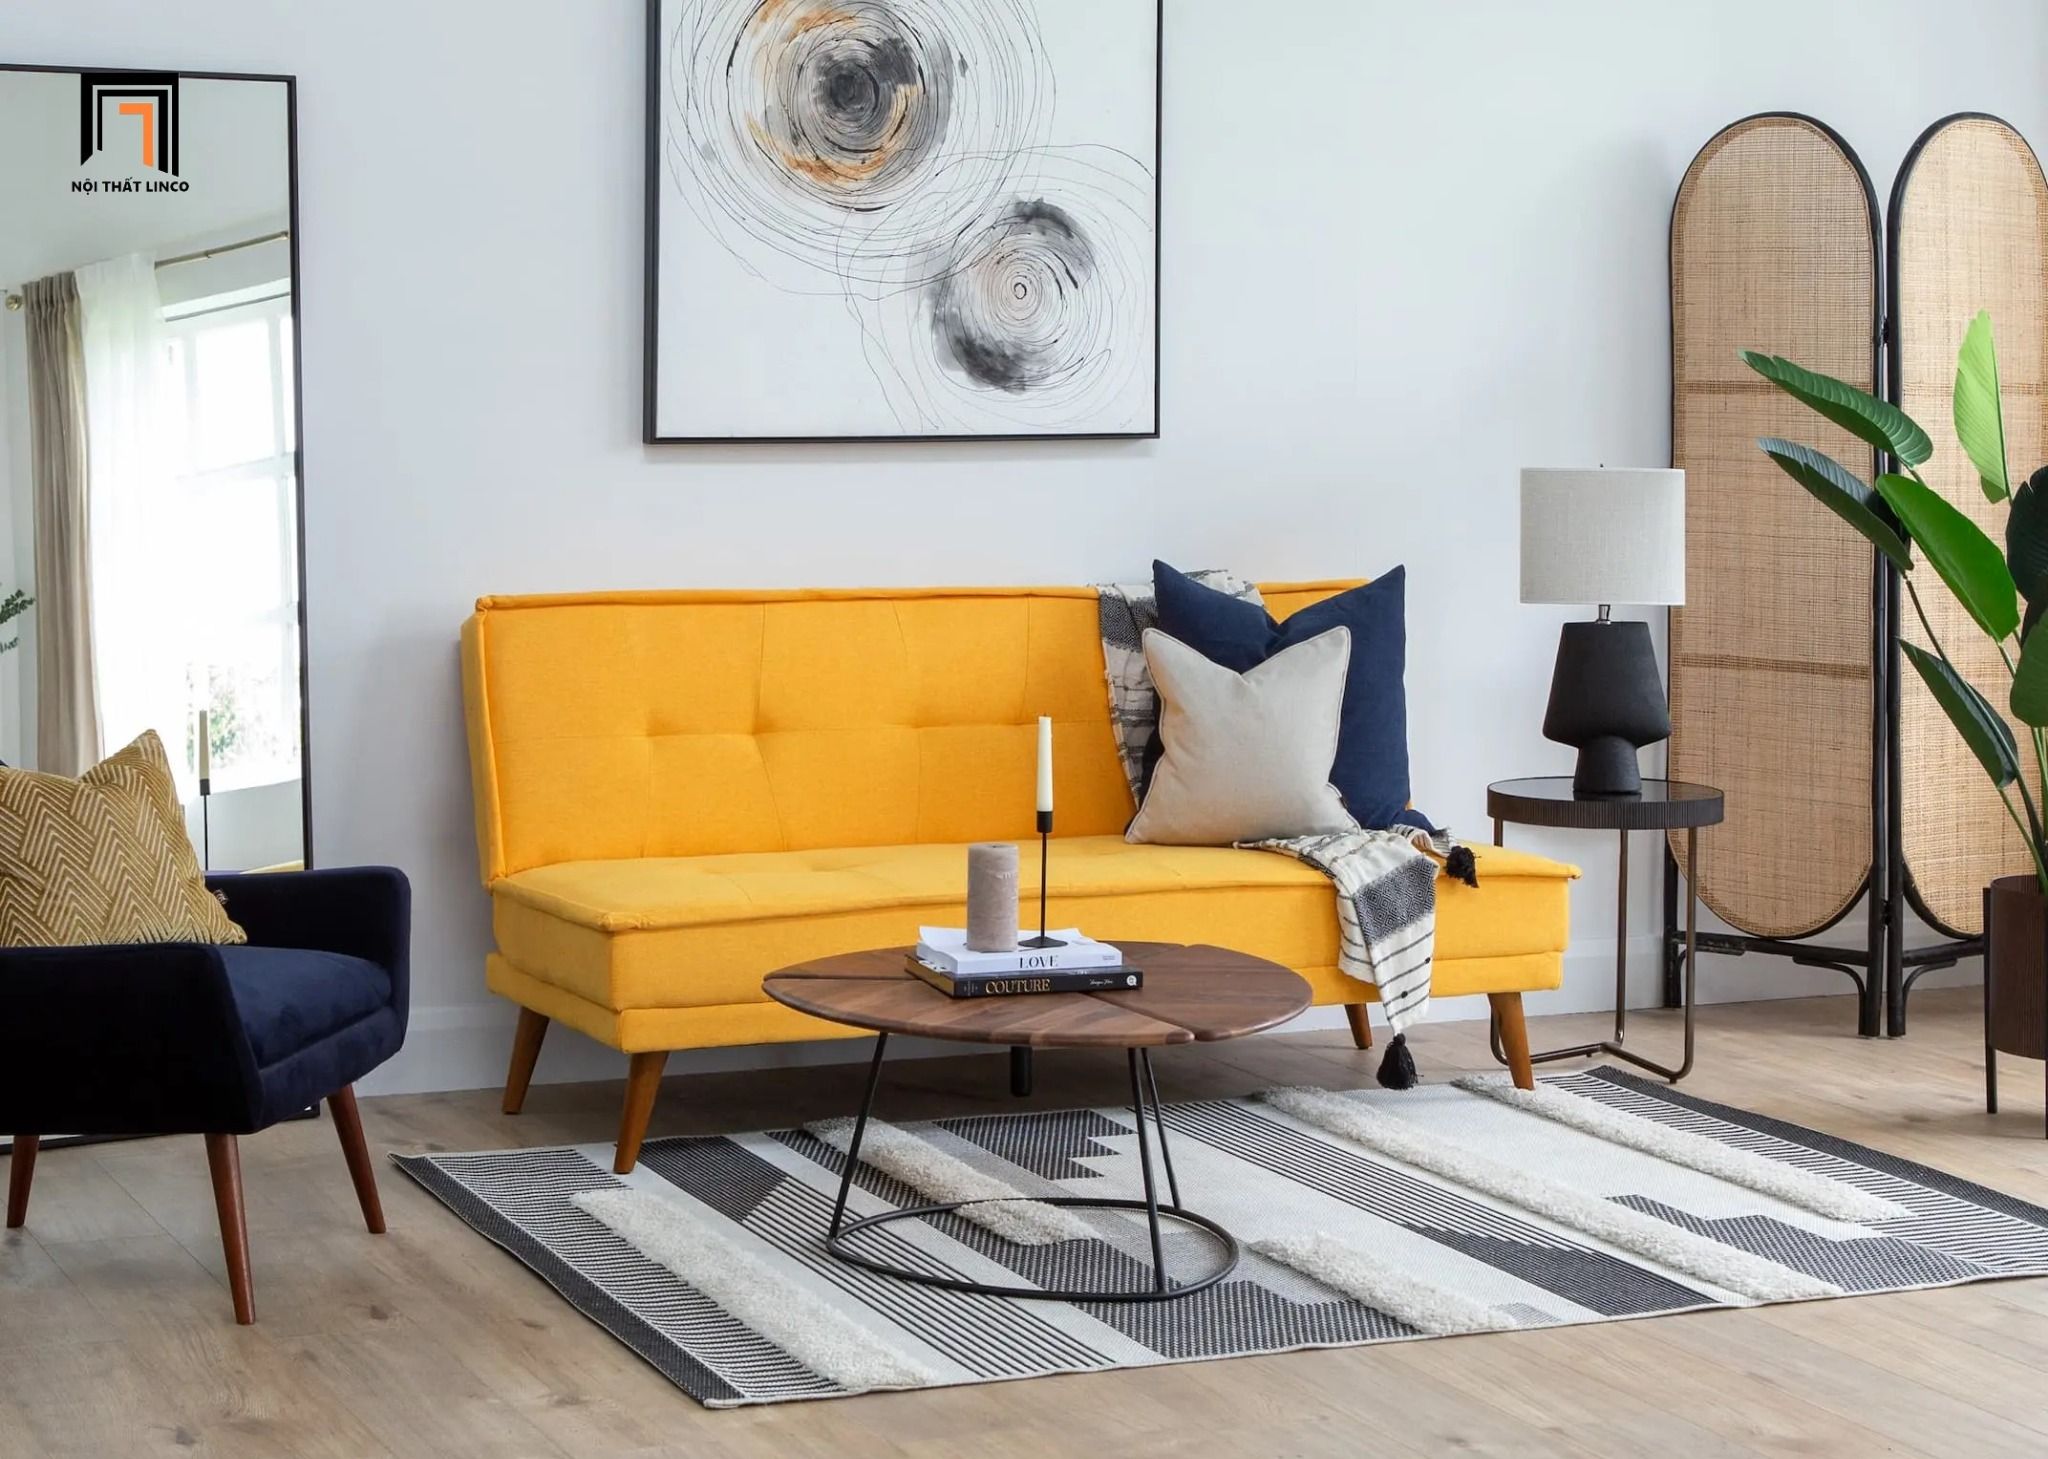  Ghế sofa giường thông minh GB40 Seattle 1m8 vải nỉ màu vàng 